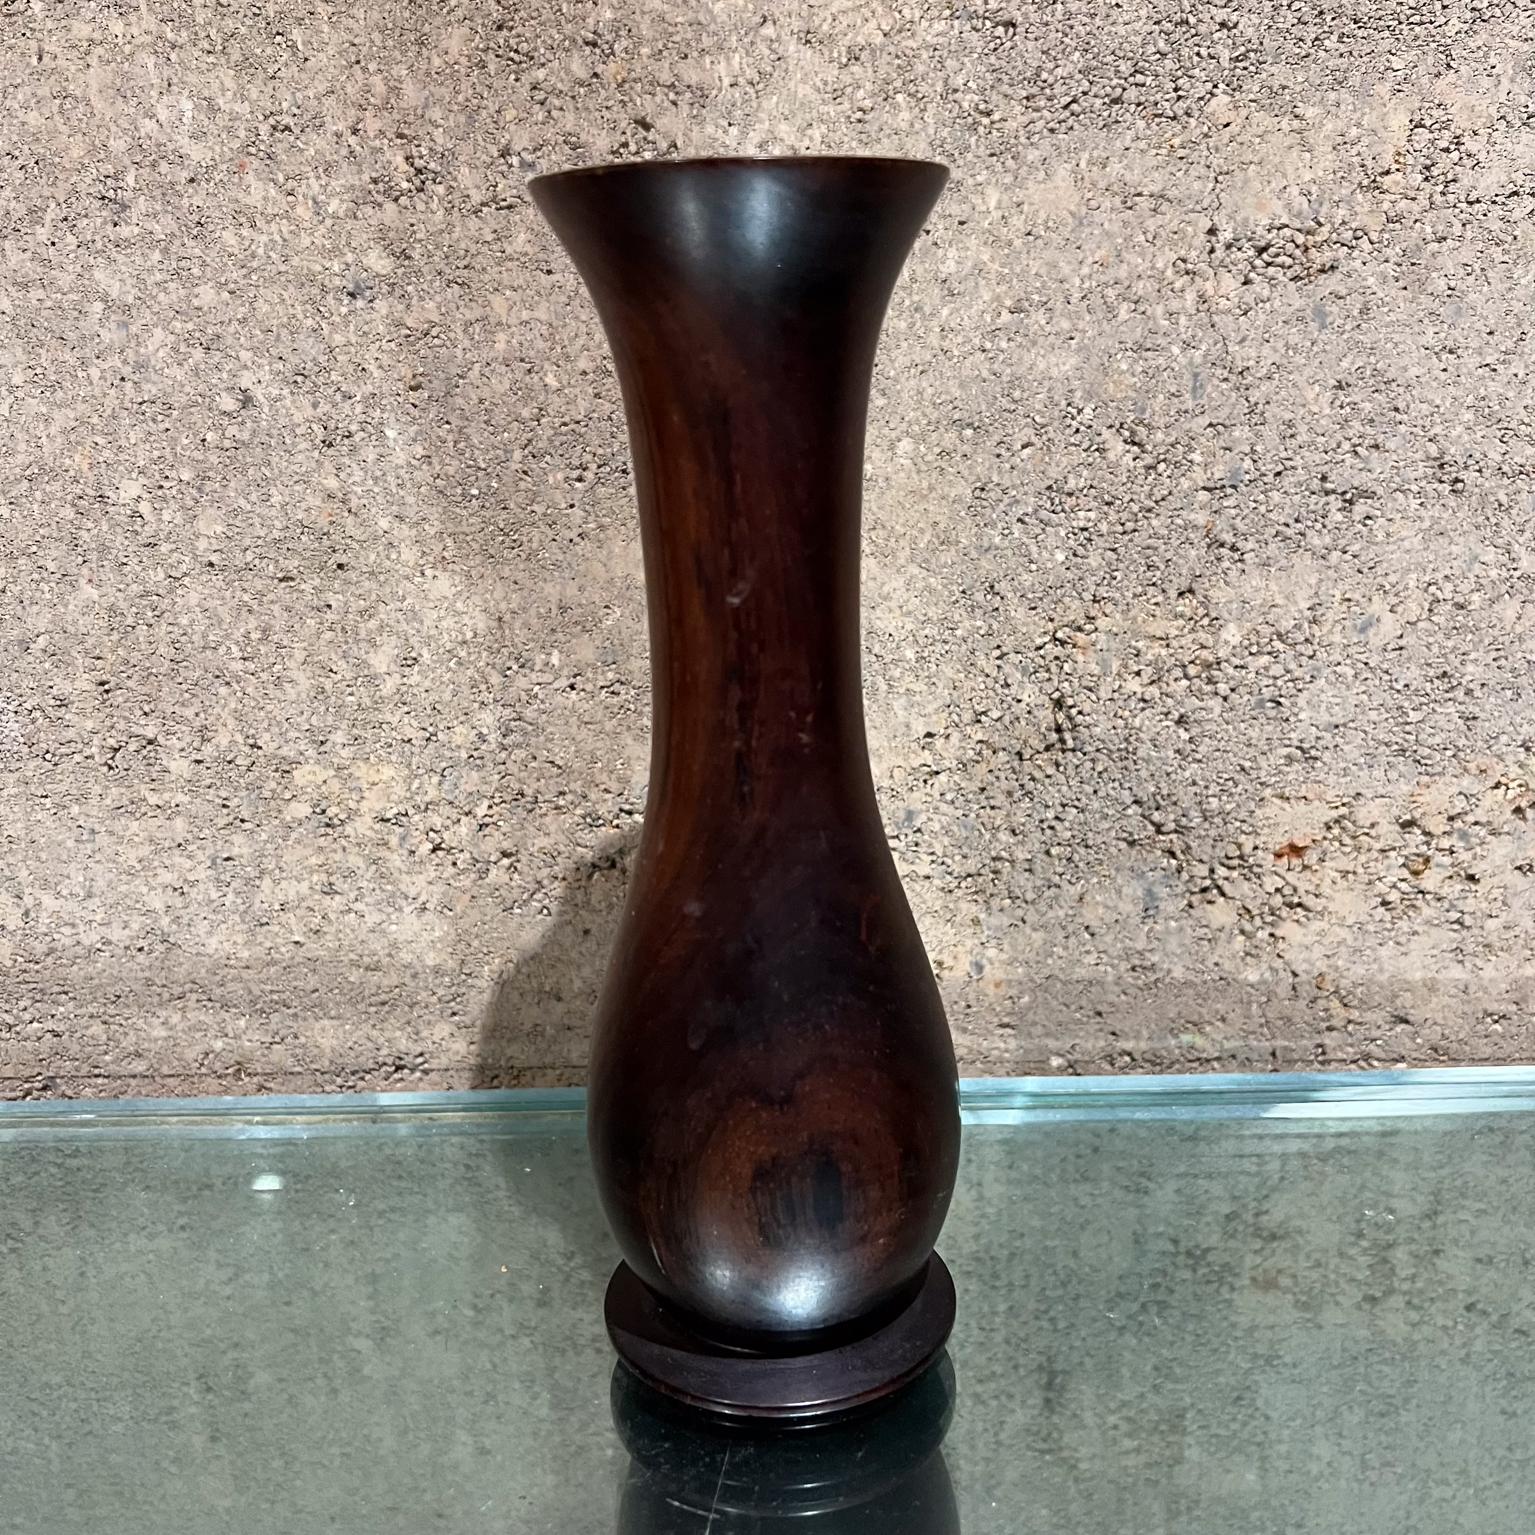 
Vase en bois tourné palissandre moderniste des années 1970
Une entaille sur la lèvre supérieure.
Etat d'origine non restauré.
Voir toutes les images.
Pas de signature
8 h x 2,63 diamètre